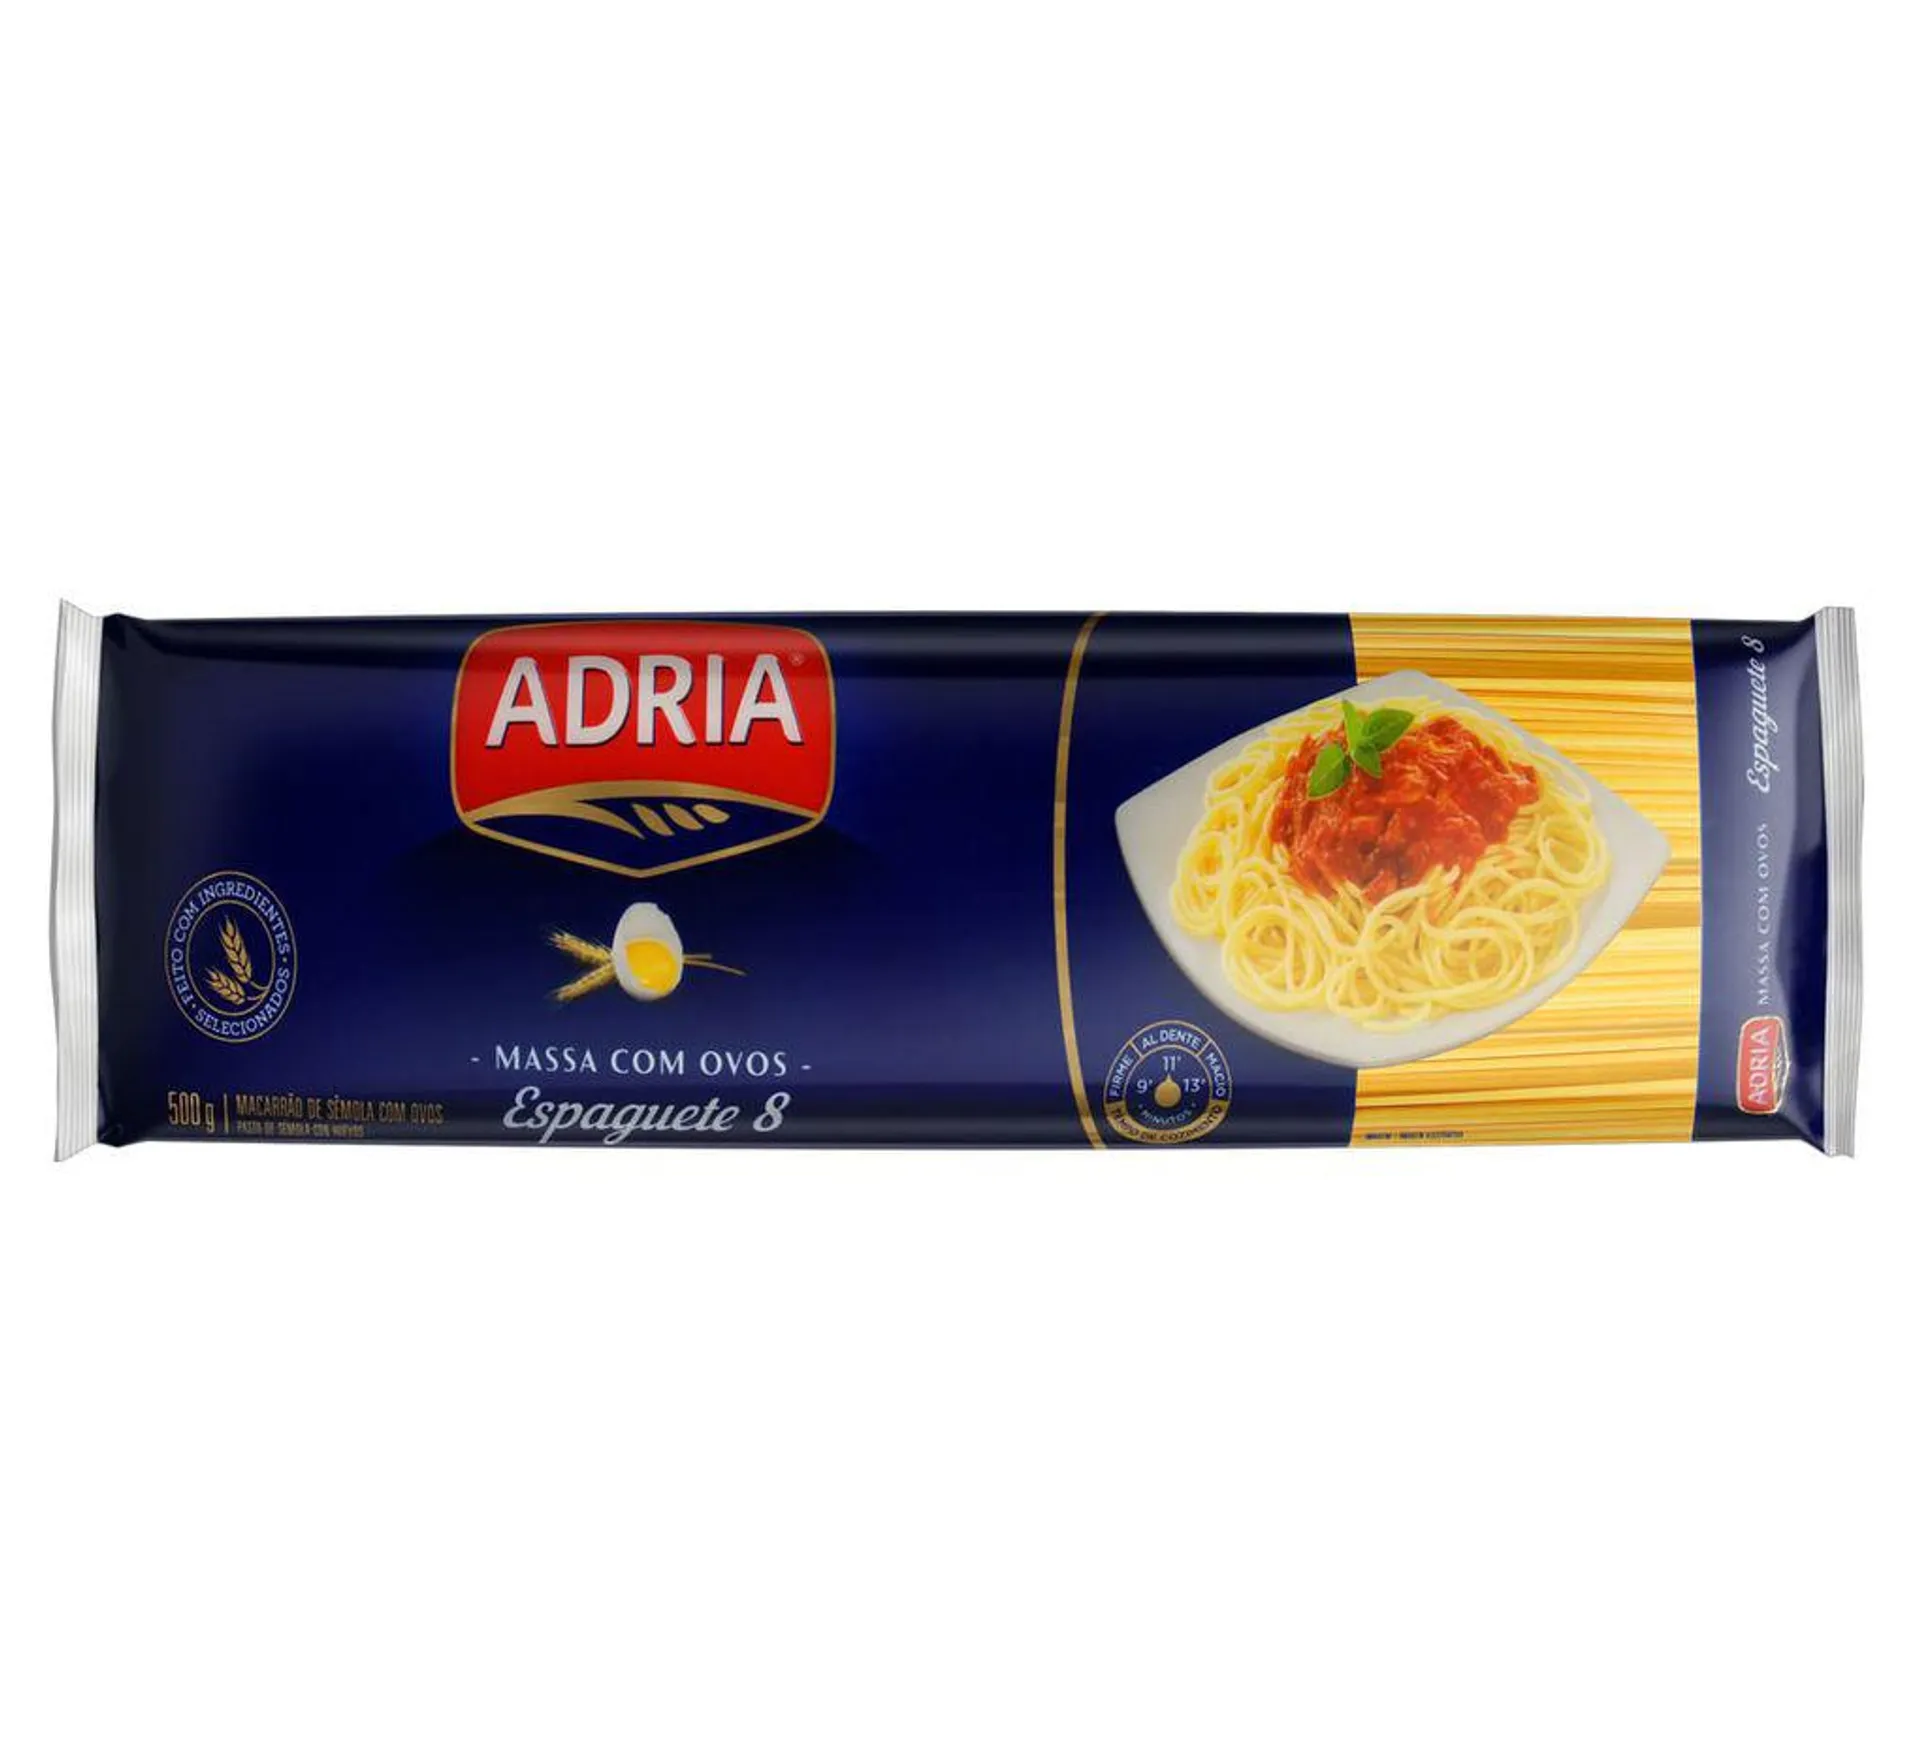 Macarrão de Sêmola com Ovos Espaguete 8 Adria 500g